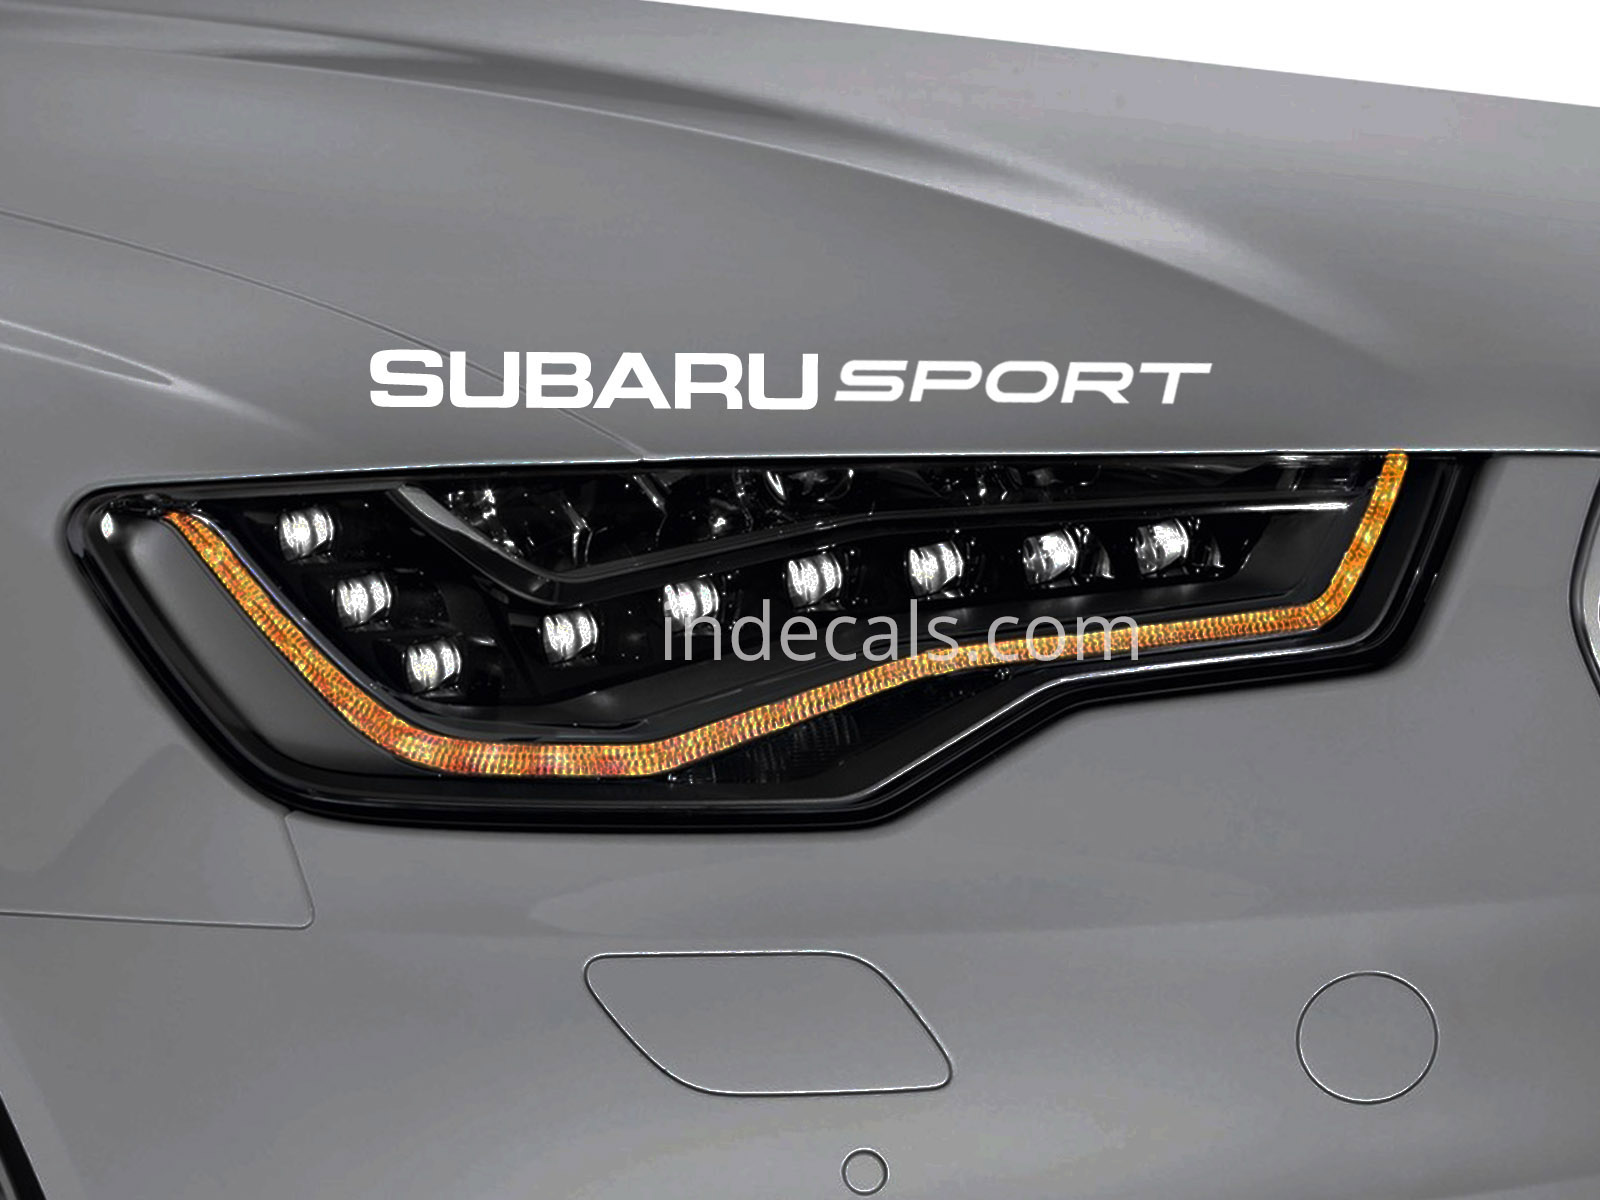 1 x Subaru Sport Sticker for Eyebrow - White